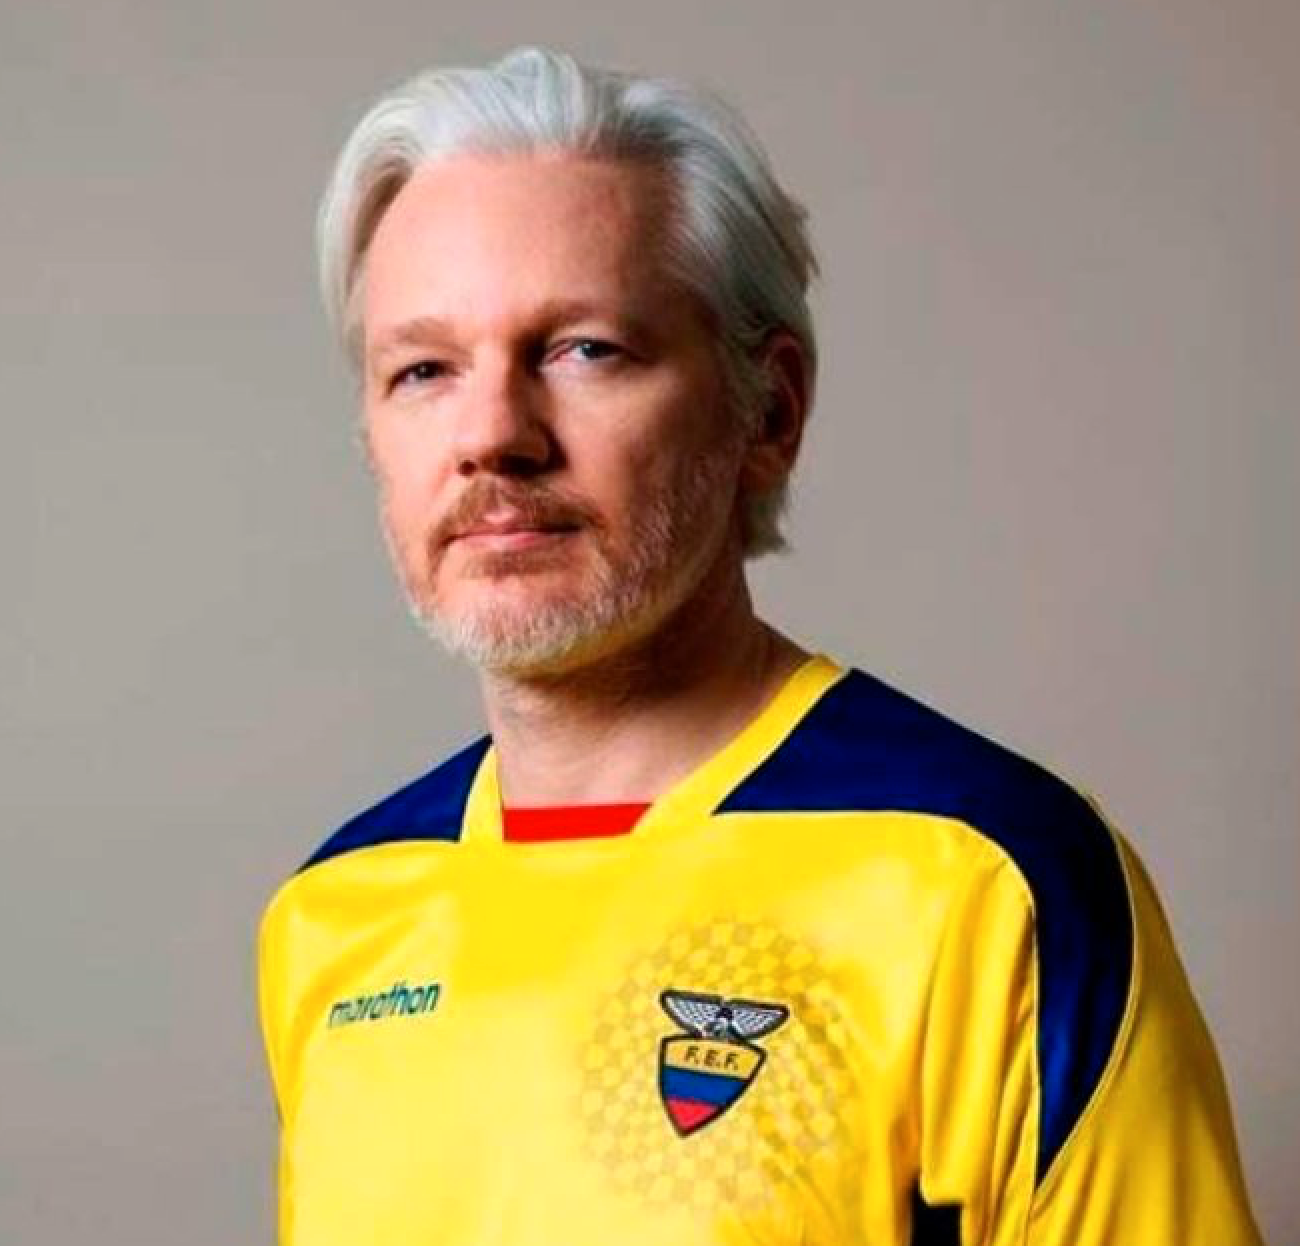 På onsdagen poserade Assange i den gula tröjan på Twitter.